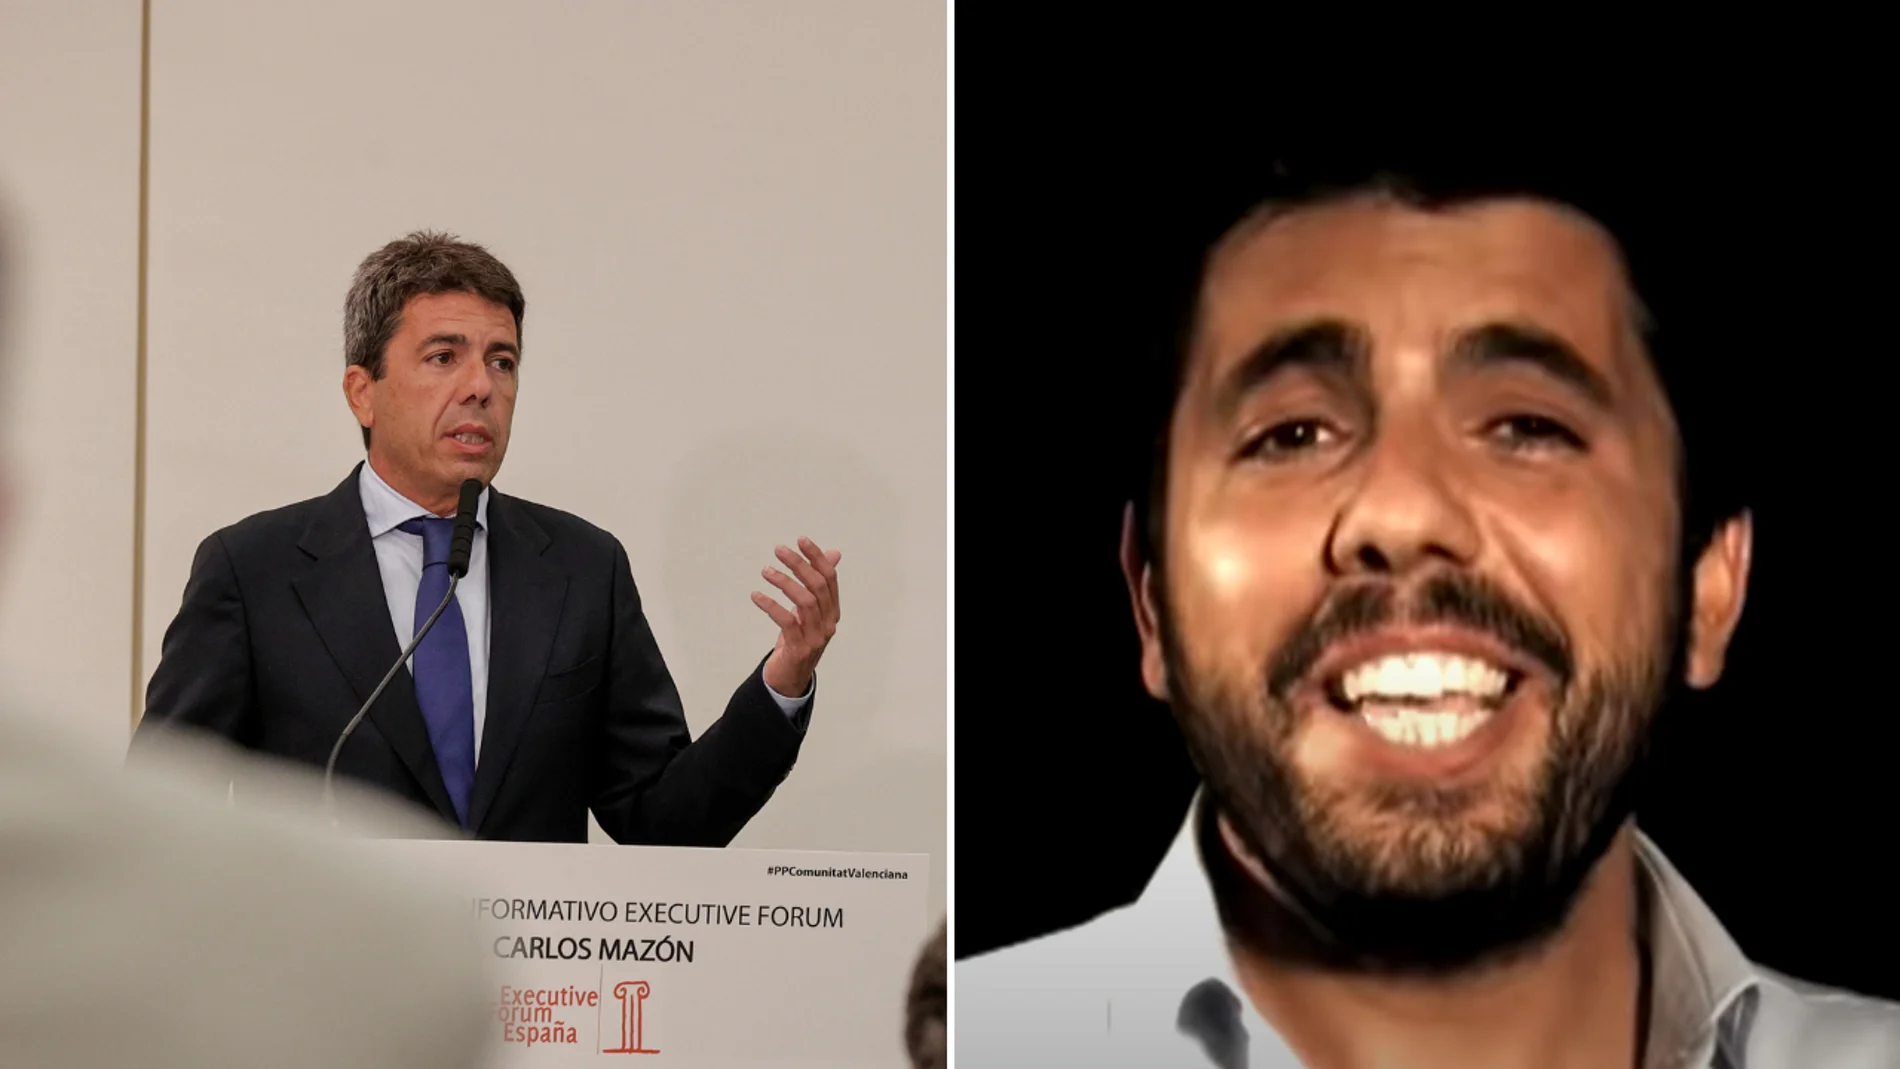 En la izquierda, Carlos Mazón, nuevo presidente de la Comunidad Valenciana después de conocer los resultados del 28M. A la derecha, el político en un videoclip de su grupo Marengo interpretando 'Y solo tú'.